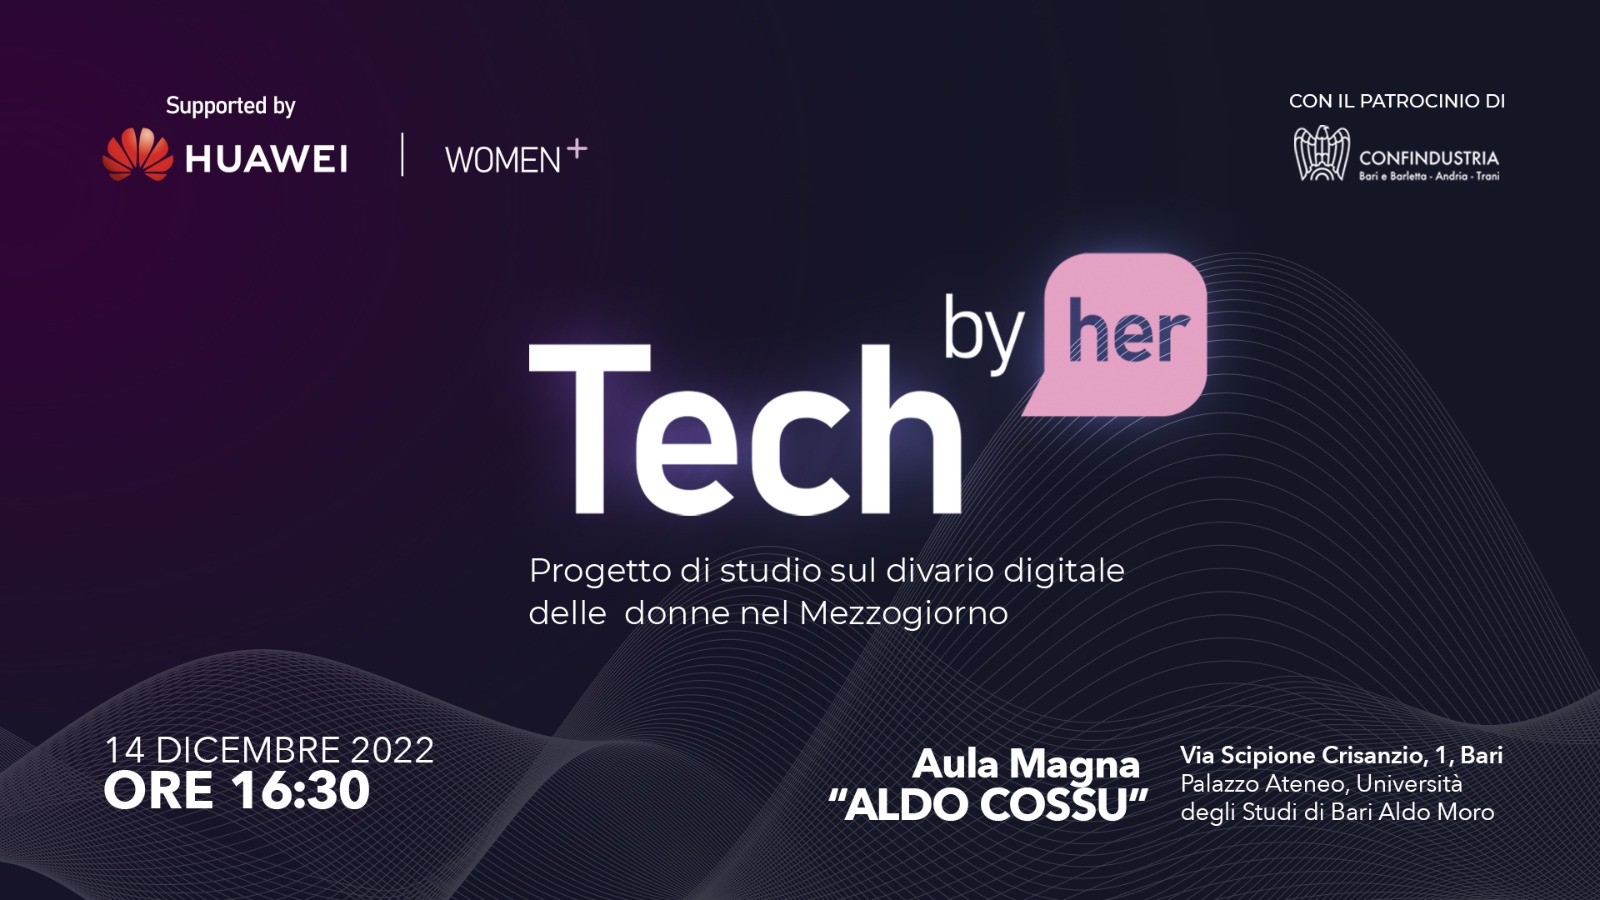 Mercoledì 14 dicembre Huawei e Women+ presenteranno all’Università di Bari  ‘Tech by Her’ progetto di studio sul divario digitale delle donne nel Mezzogiorno